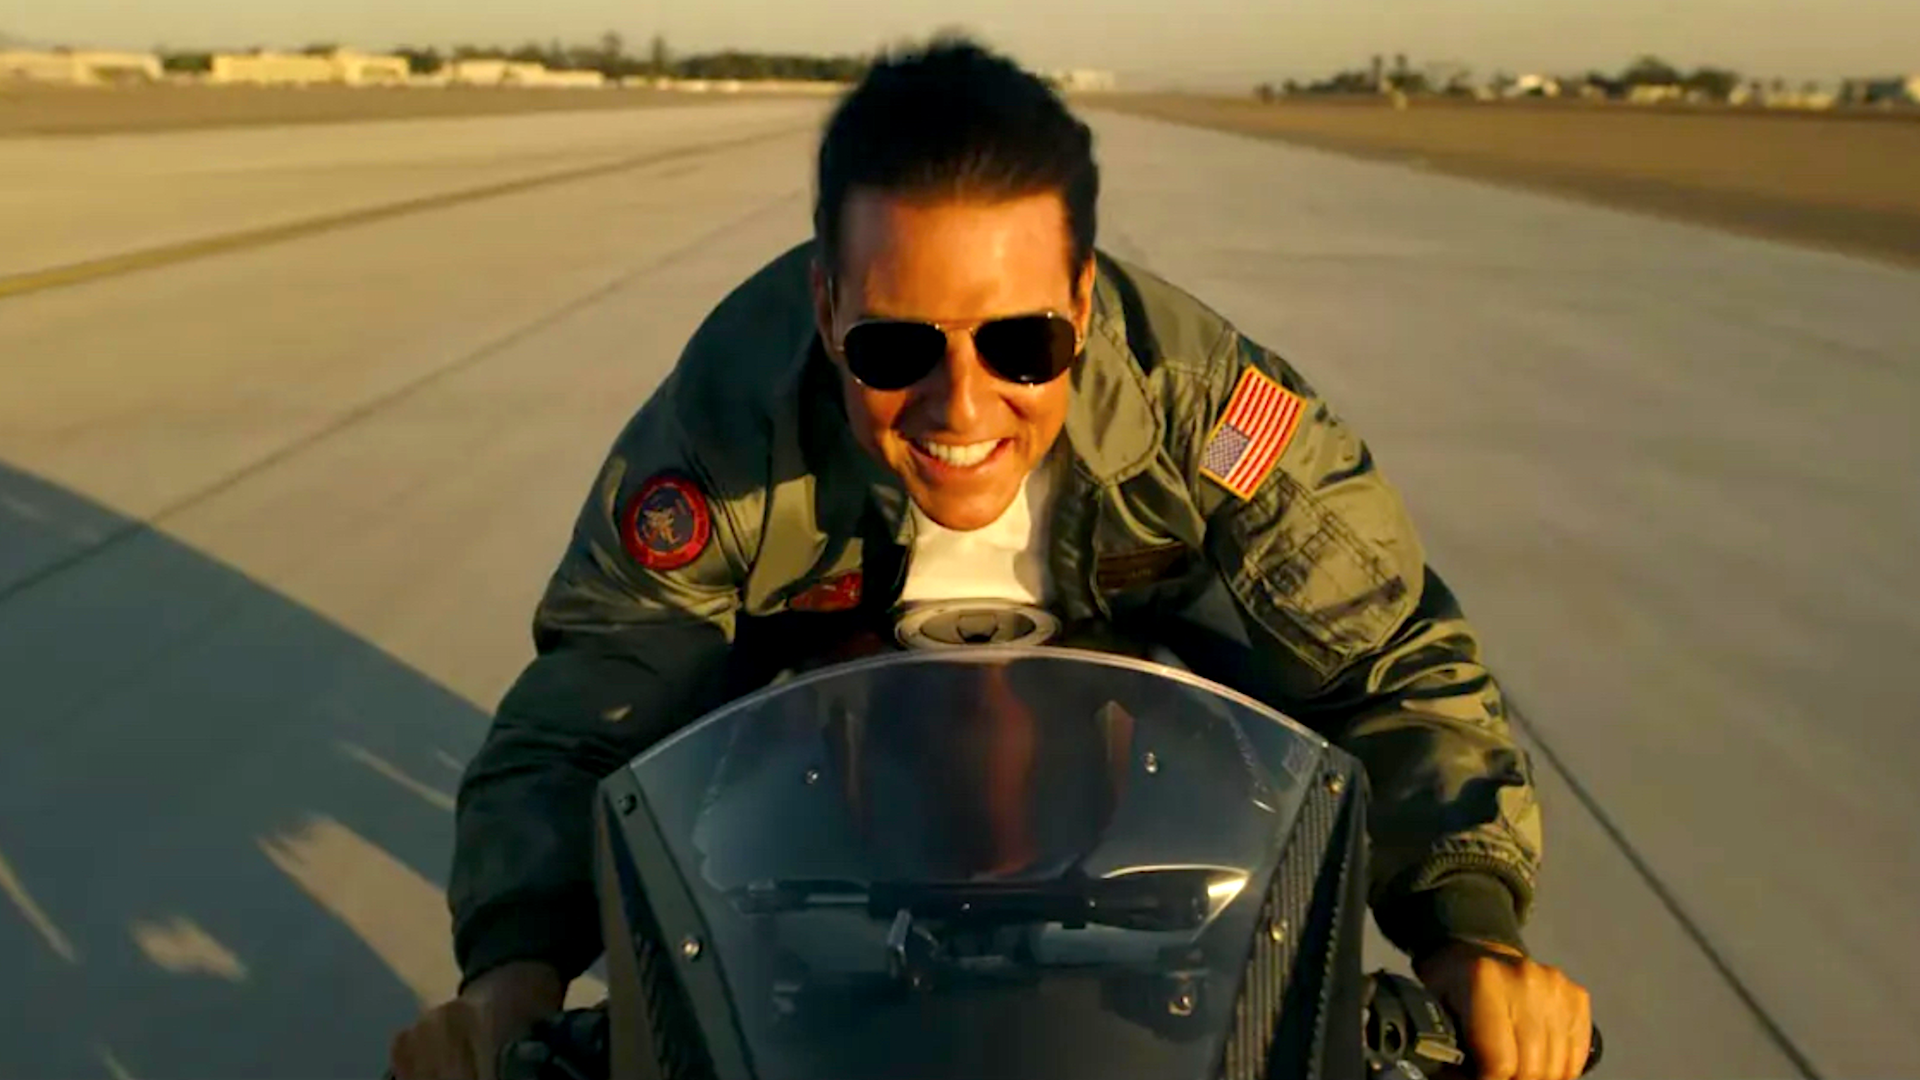 How to buy Tom Cruise's aviator from 'Top Gun: Maverick'